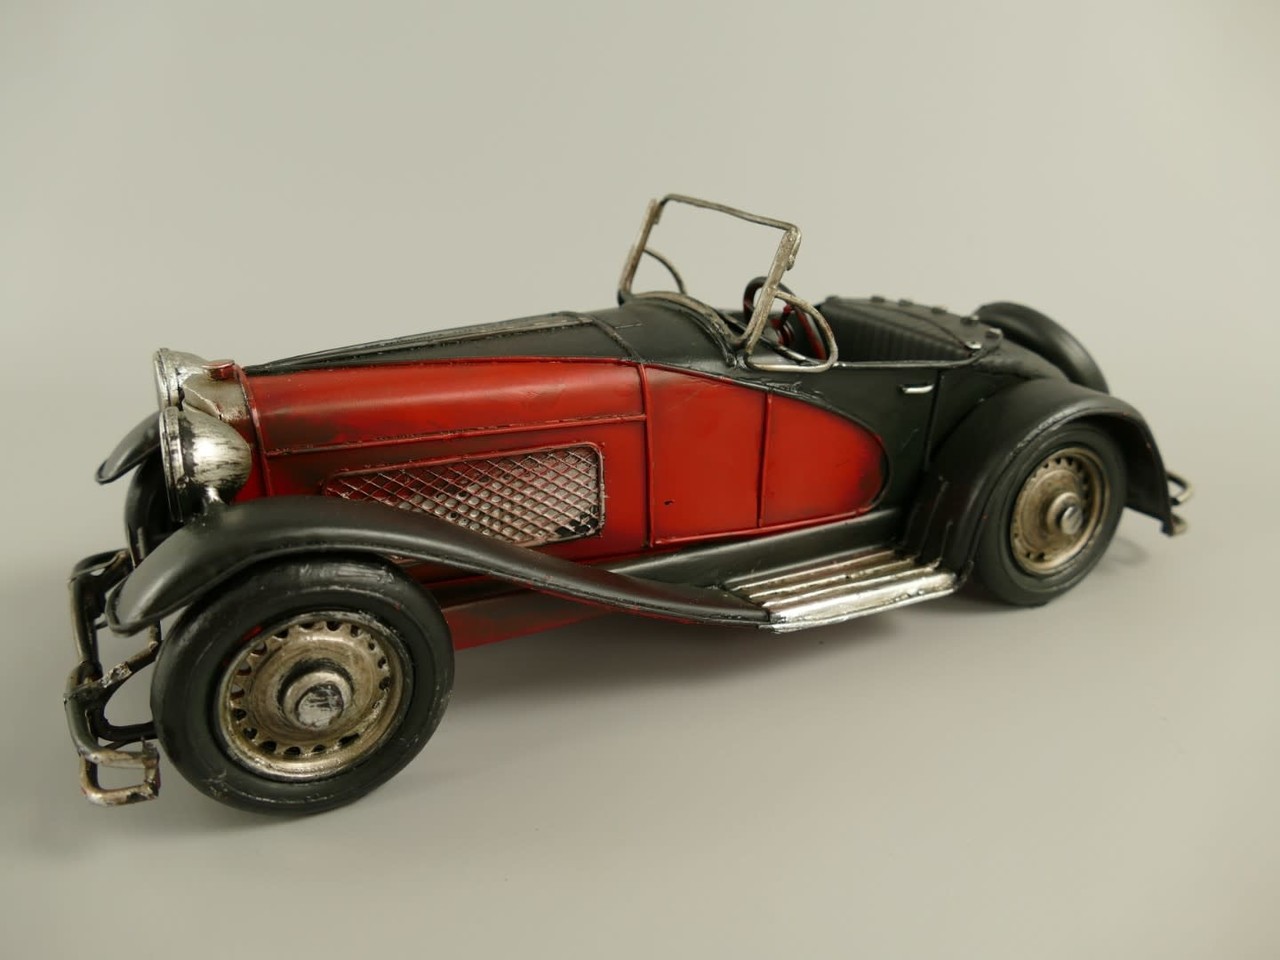 Veel Allerlei soorten Correlaat Miniatuur model Antieke auto | Eliassen - Eliassen Home & Garden Pleasure